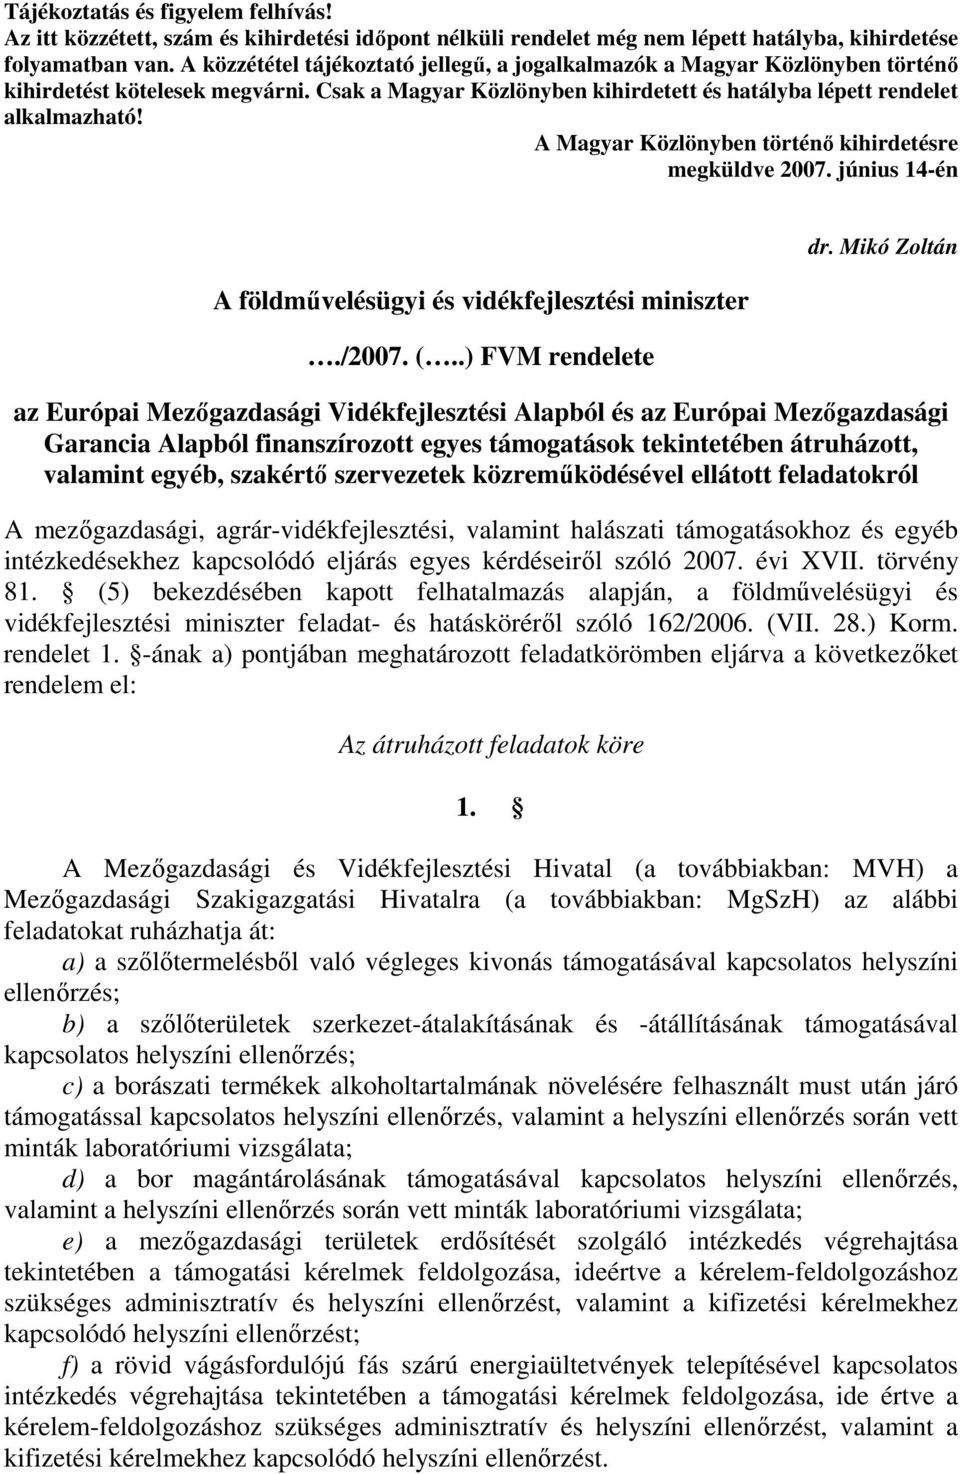 A Magyar Közlönyben történı kihirdetésre megküldve 2007. június 14-én A földmővelésügyi és vidékfejlesztési miniszter./2007. (..) FVM rendelete dr.